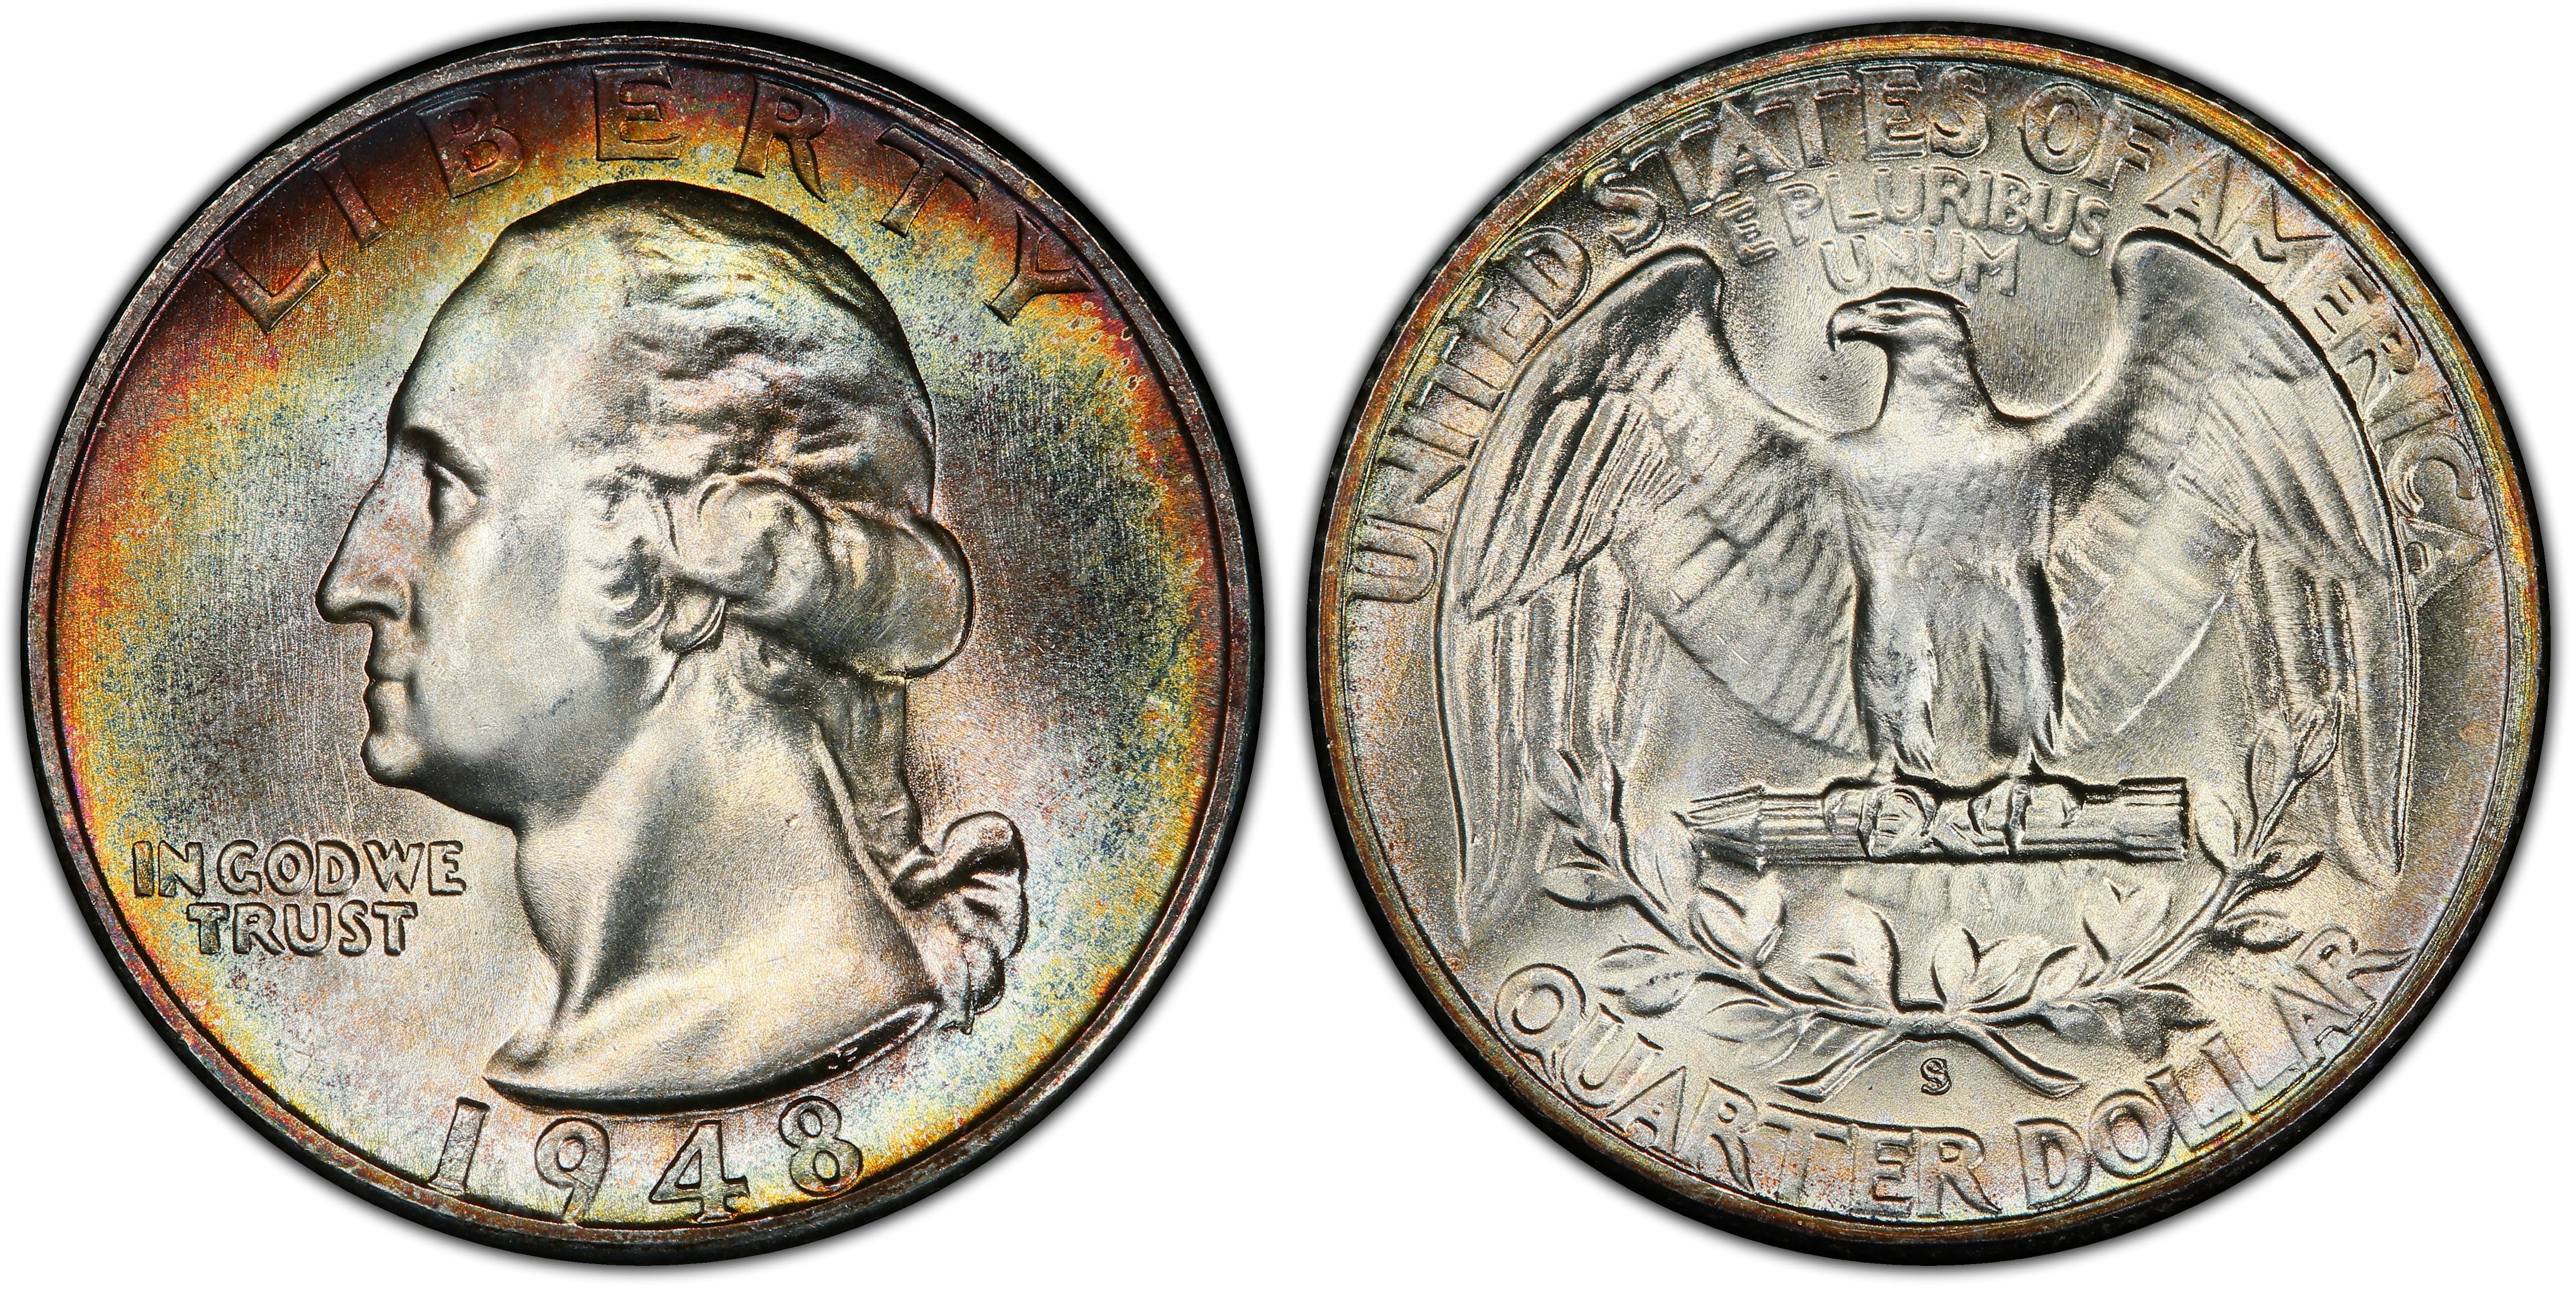 Details about   1948 BU Washington Quarter Uncirculated Twenty Five Cents Silver 25c Coin 